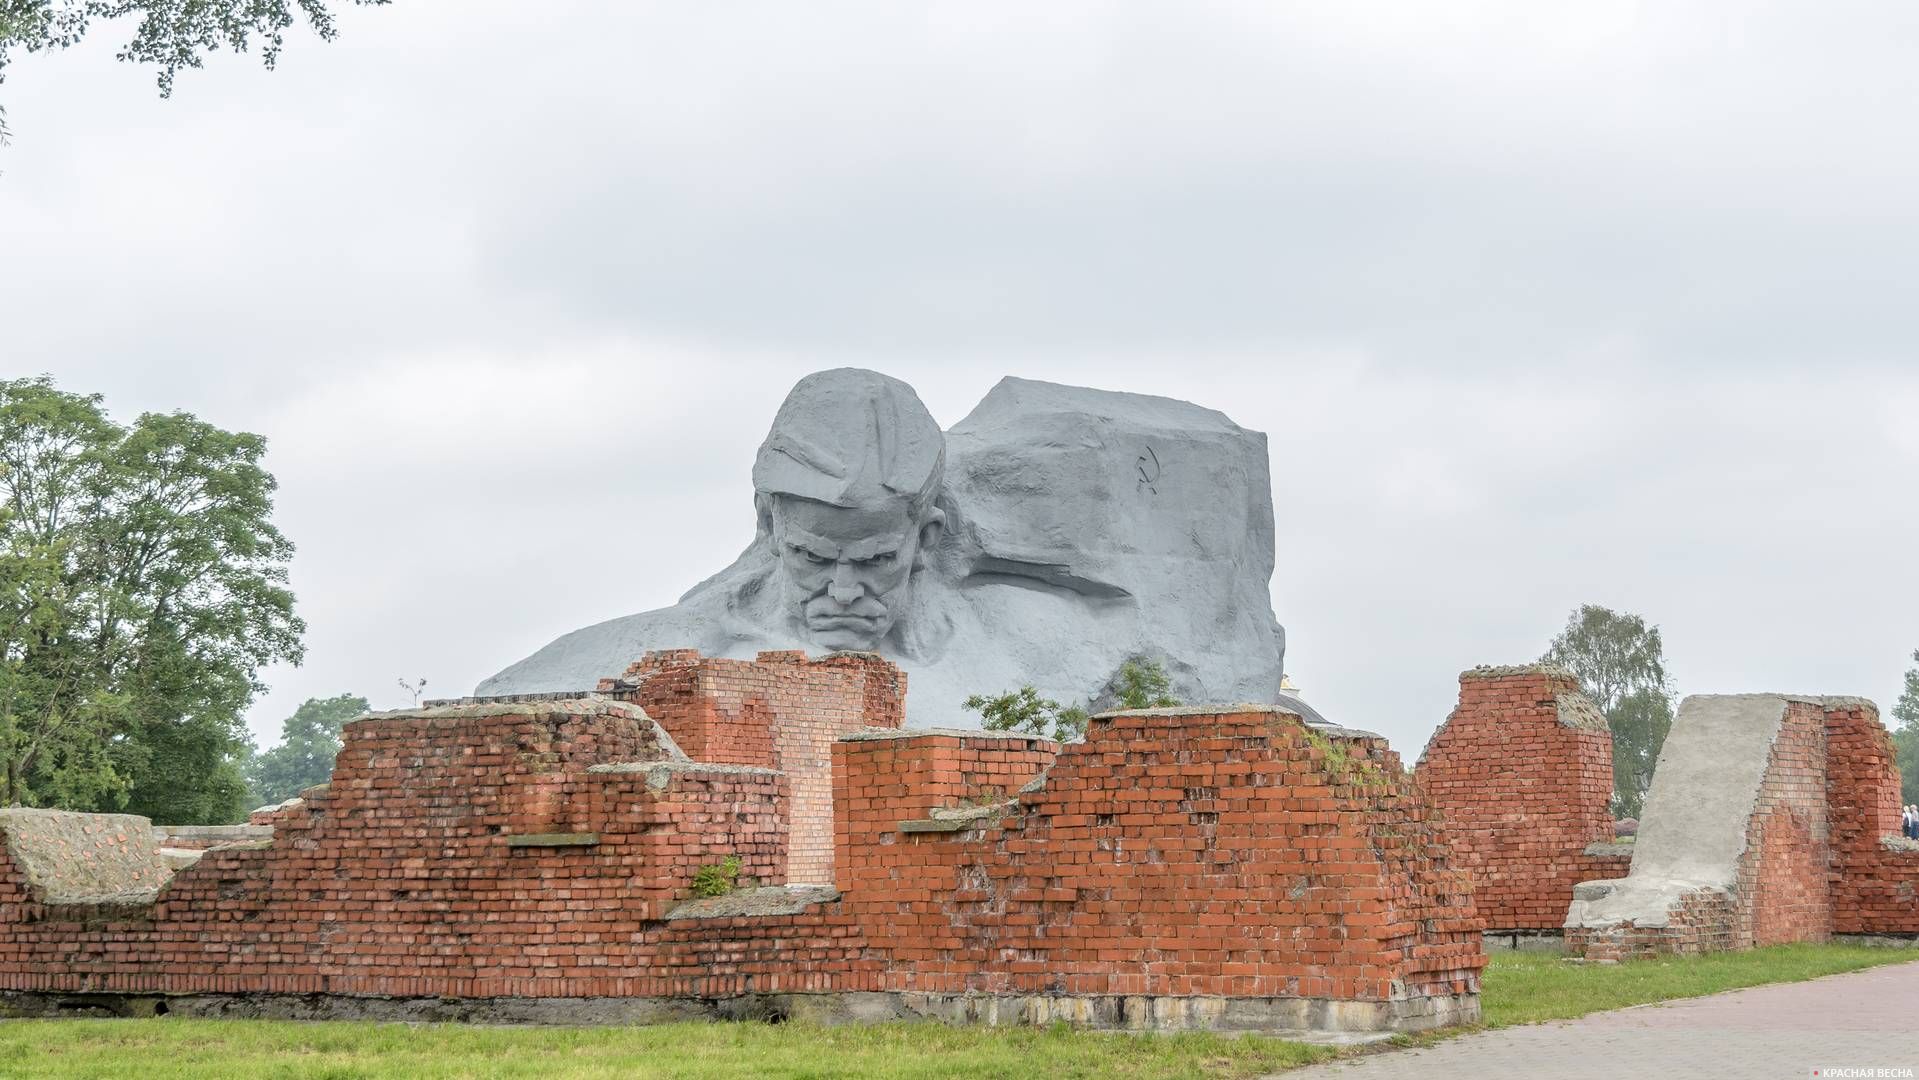 Руины оборонительных казарм на фоне Главного монумента. Брестская крепость, Брест, Беларусь